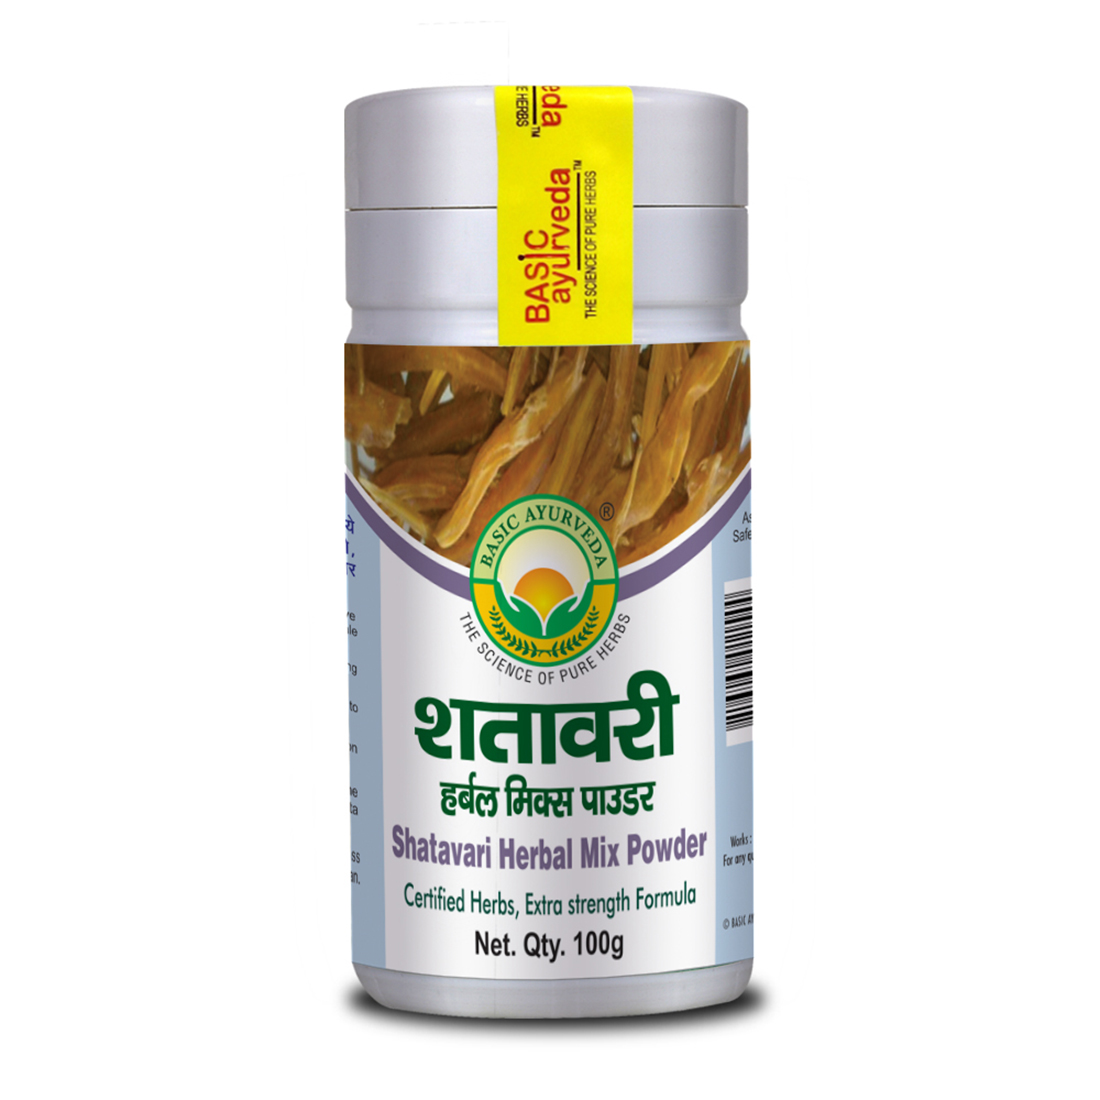 Shatavari Herbal Mix Powder